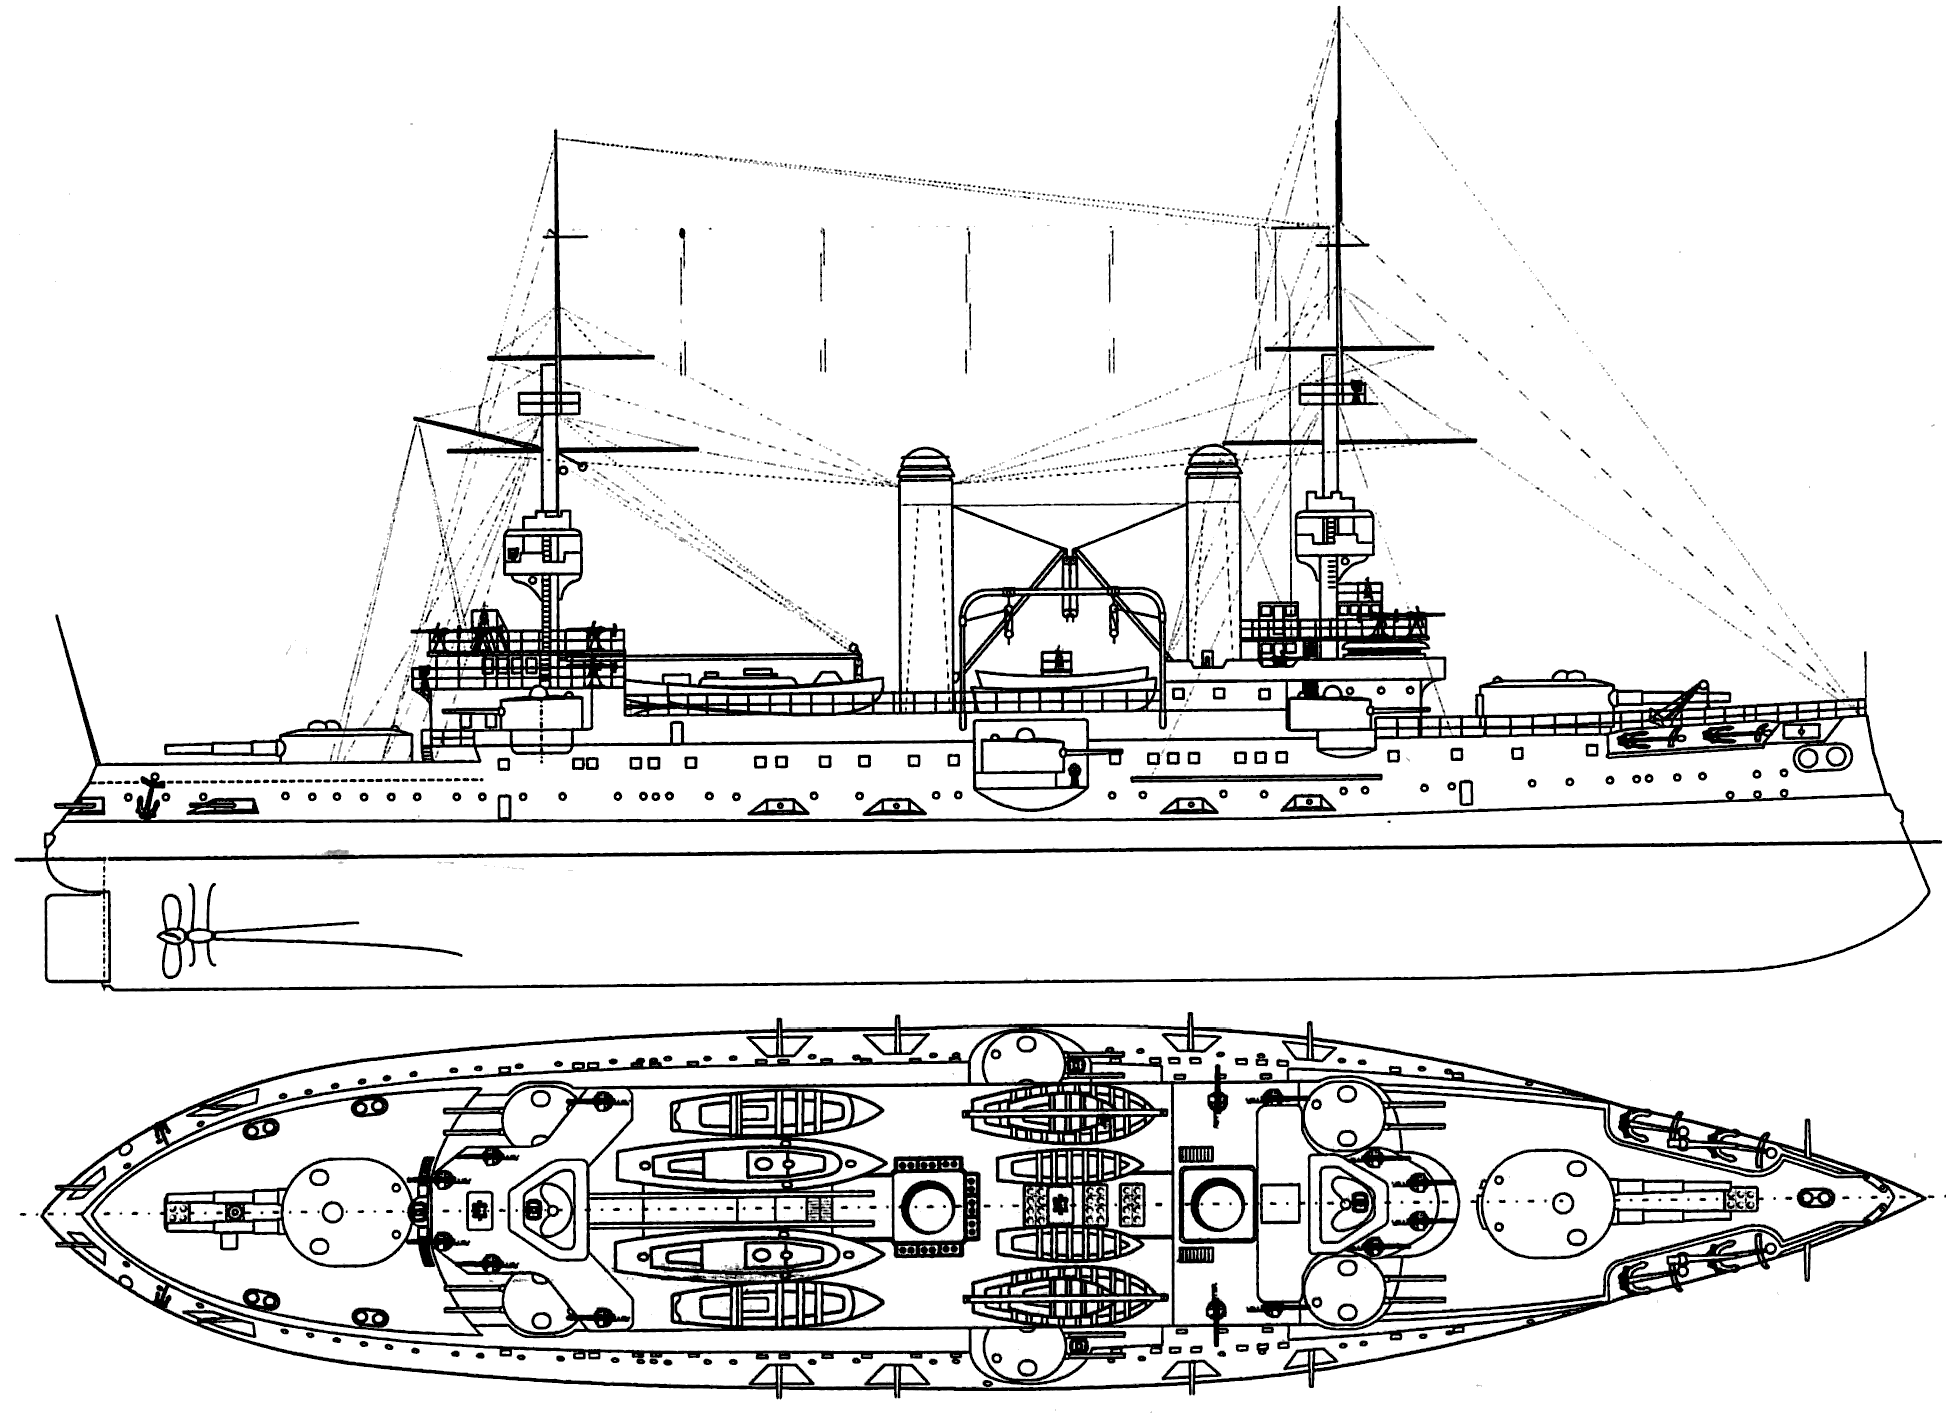 Russian battleship Tsesarevich blueprint